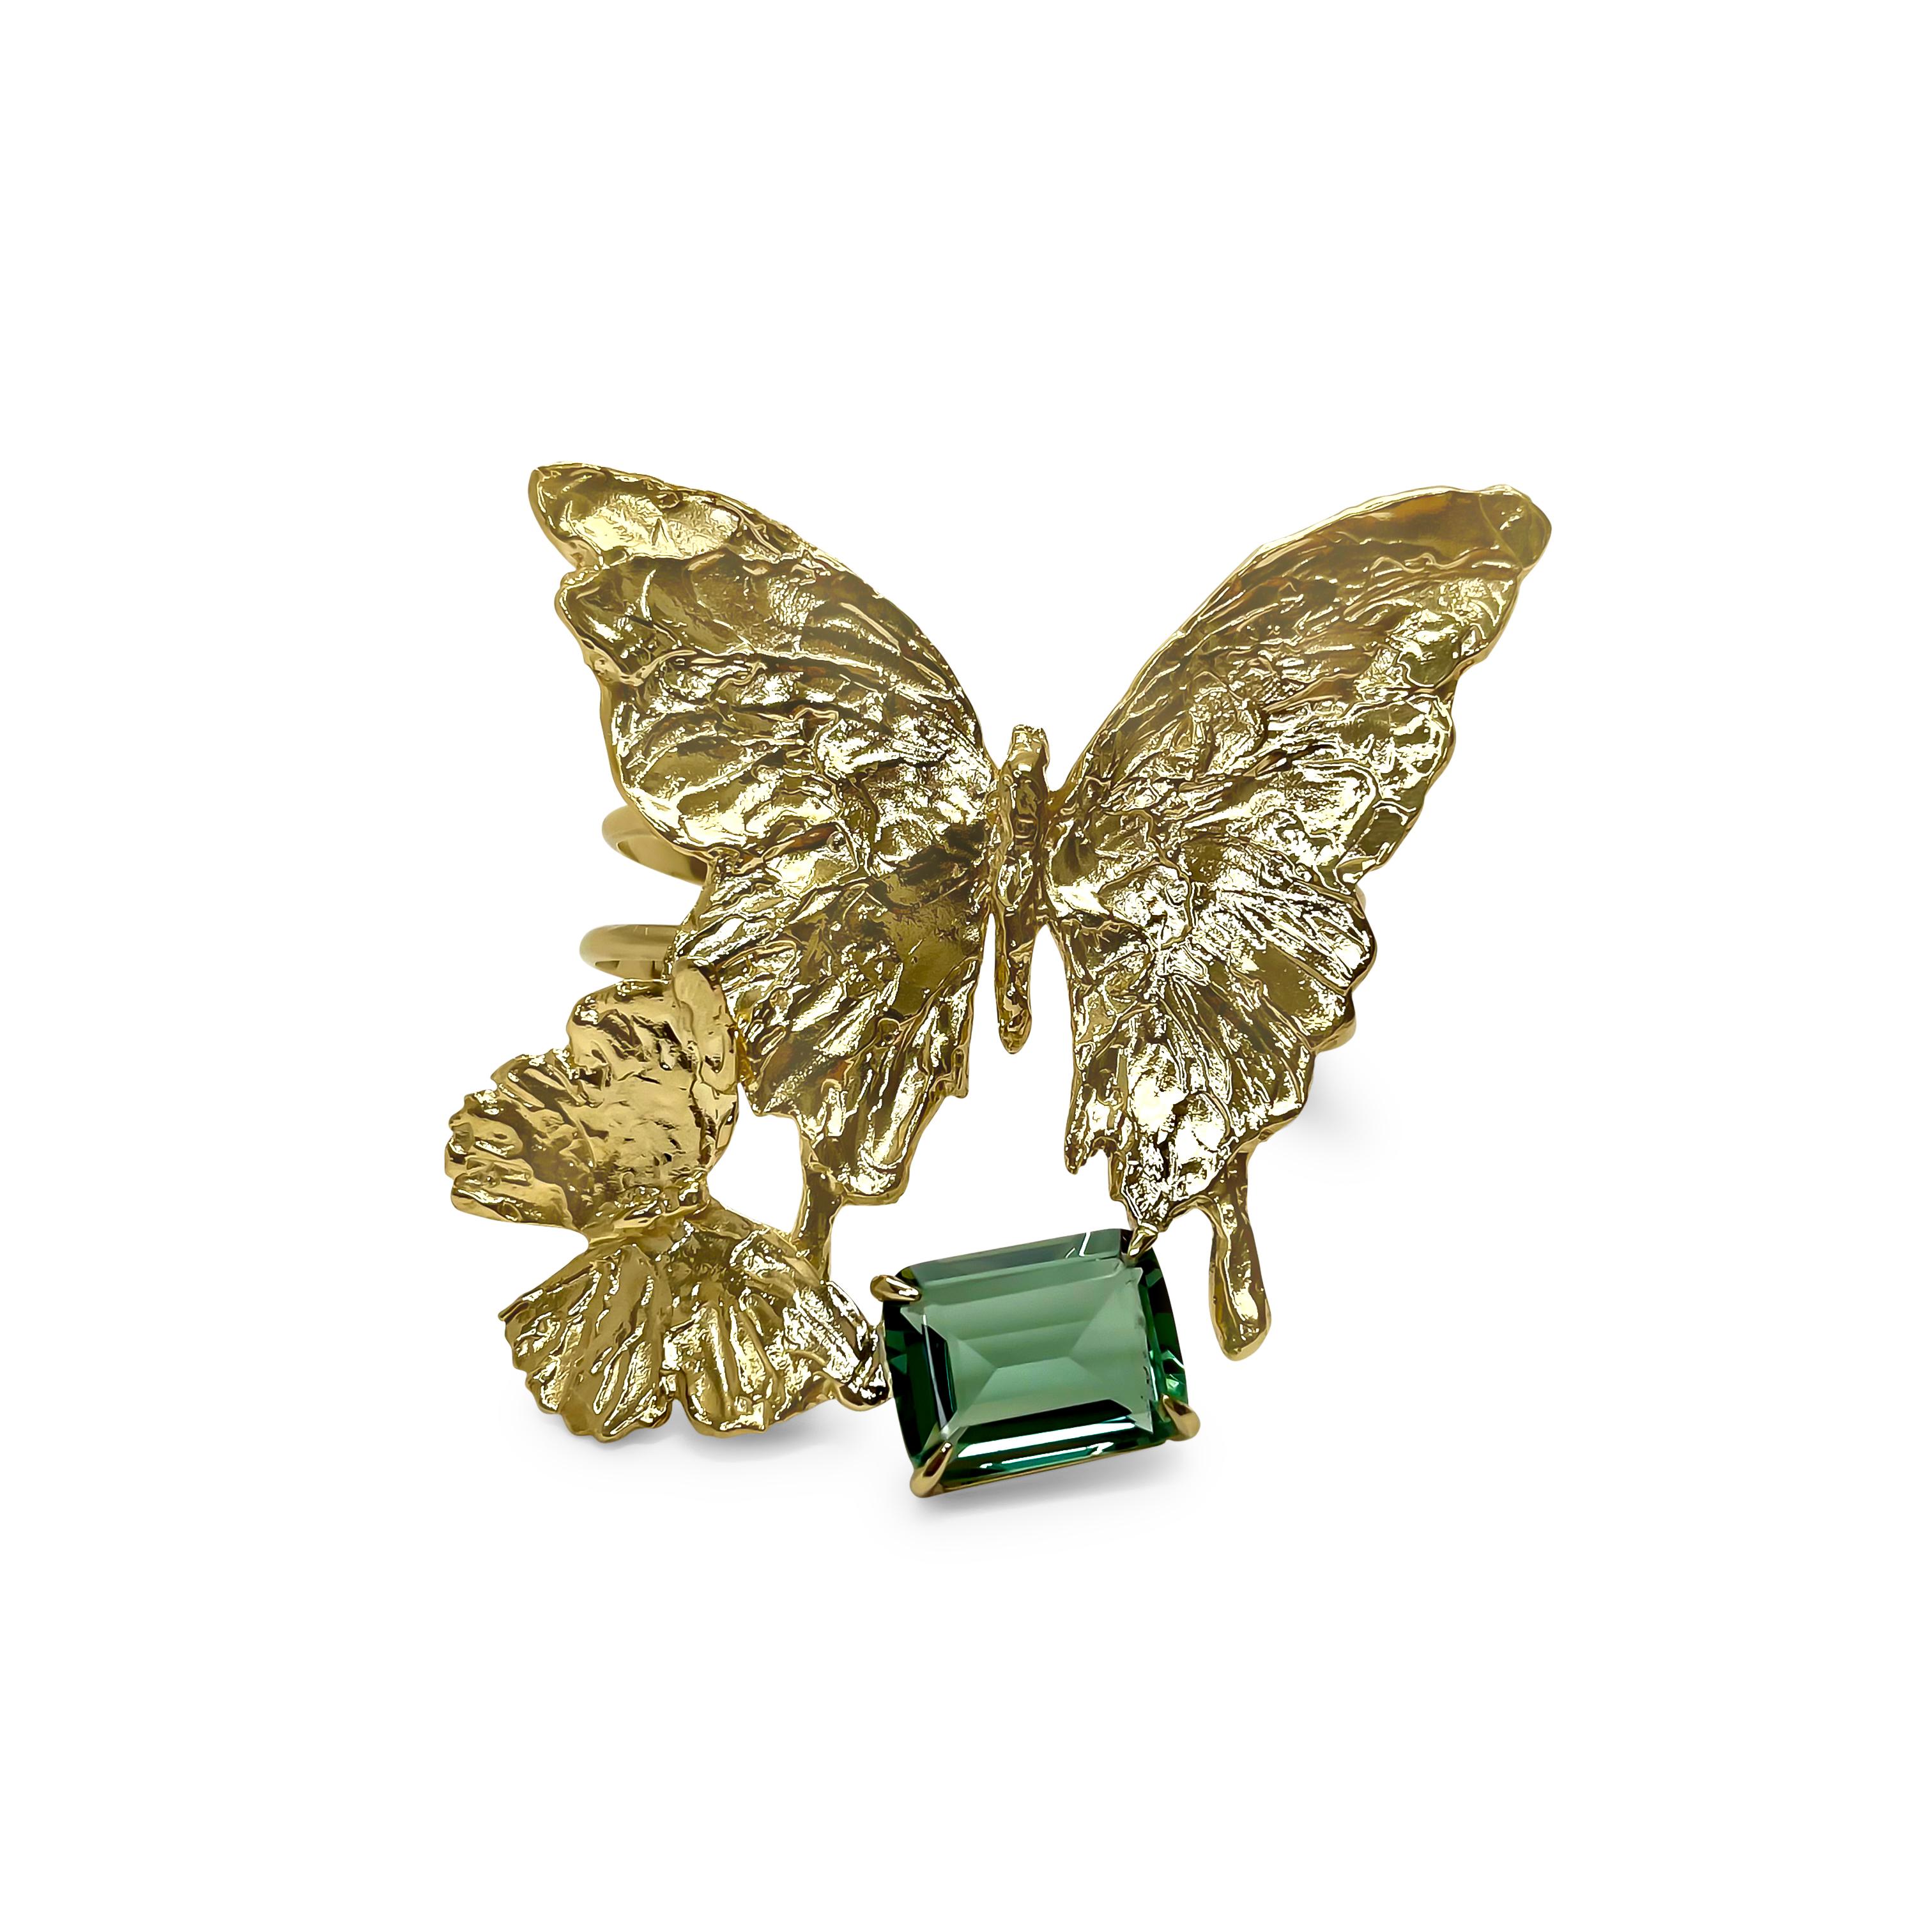 Intention : Sagesse

Design/One : Deux papillons sculptés à la main volent en harmonie, couvrant l'étendue du poignet et scintillant de quartz vert taillé en émeraude. Les bandes confortables en laiton doré thaïlandais enserrent confortablement le